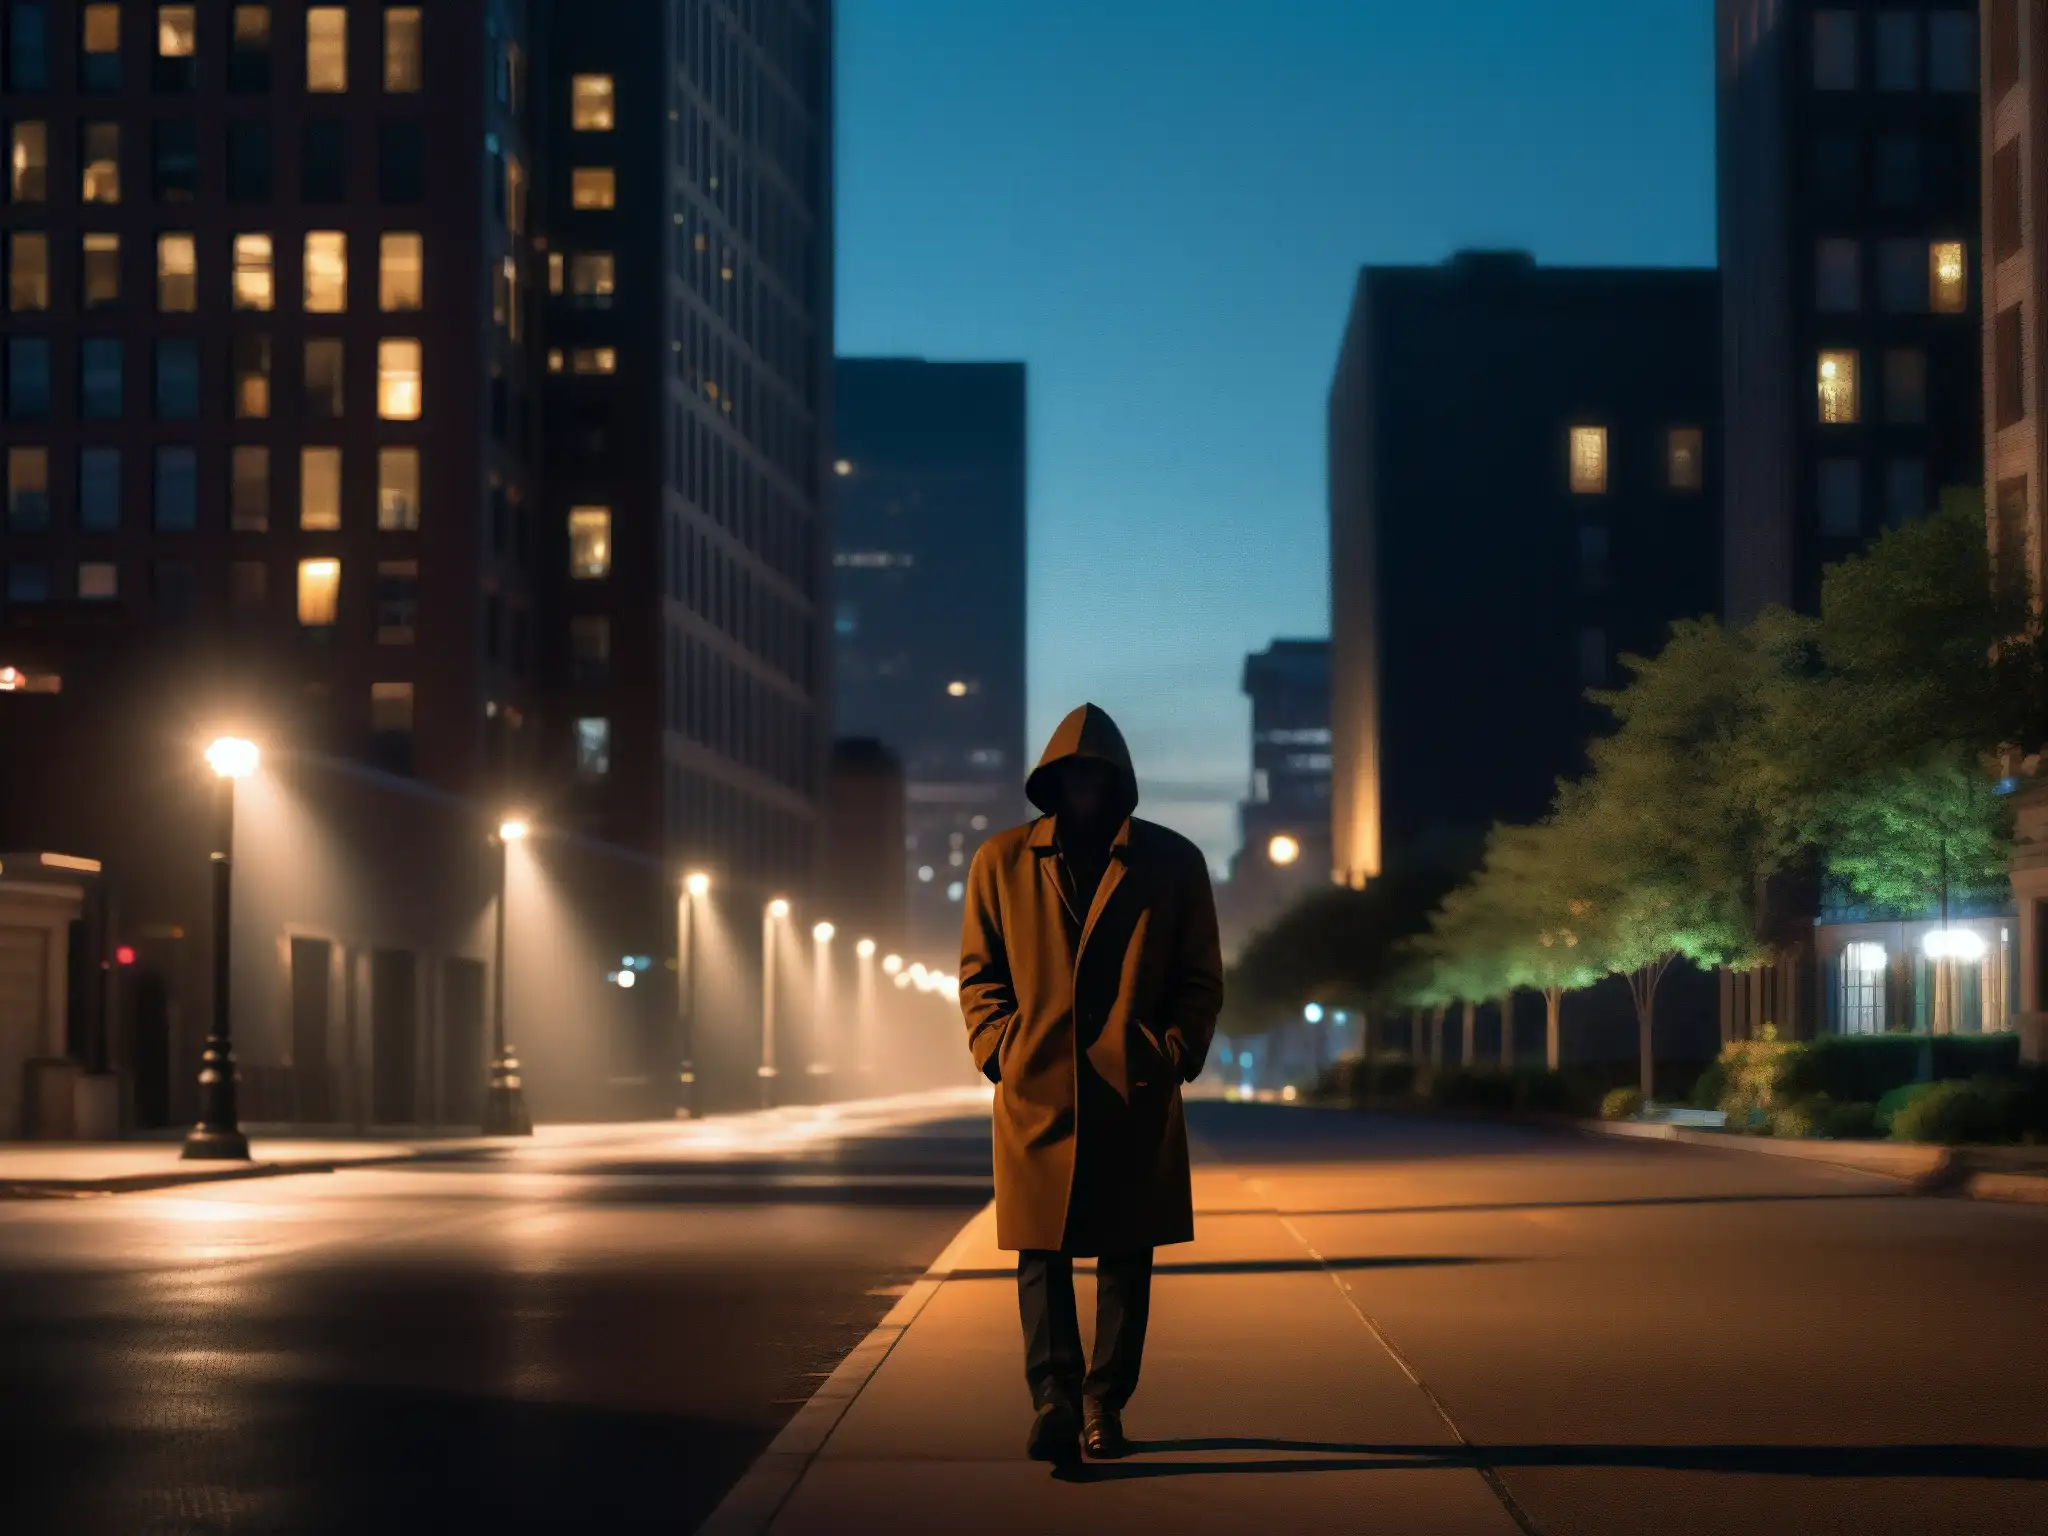 En la oscuridad de la noche, una figura solitaria camina en una calle urbana, evocando el miedo inconsciente y la influencia de las leyendas urbanas